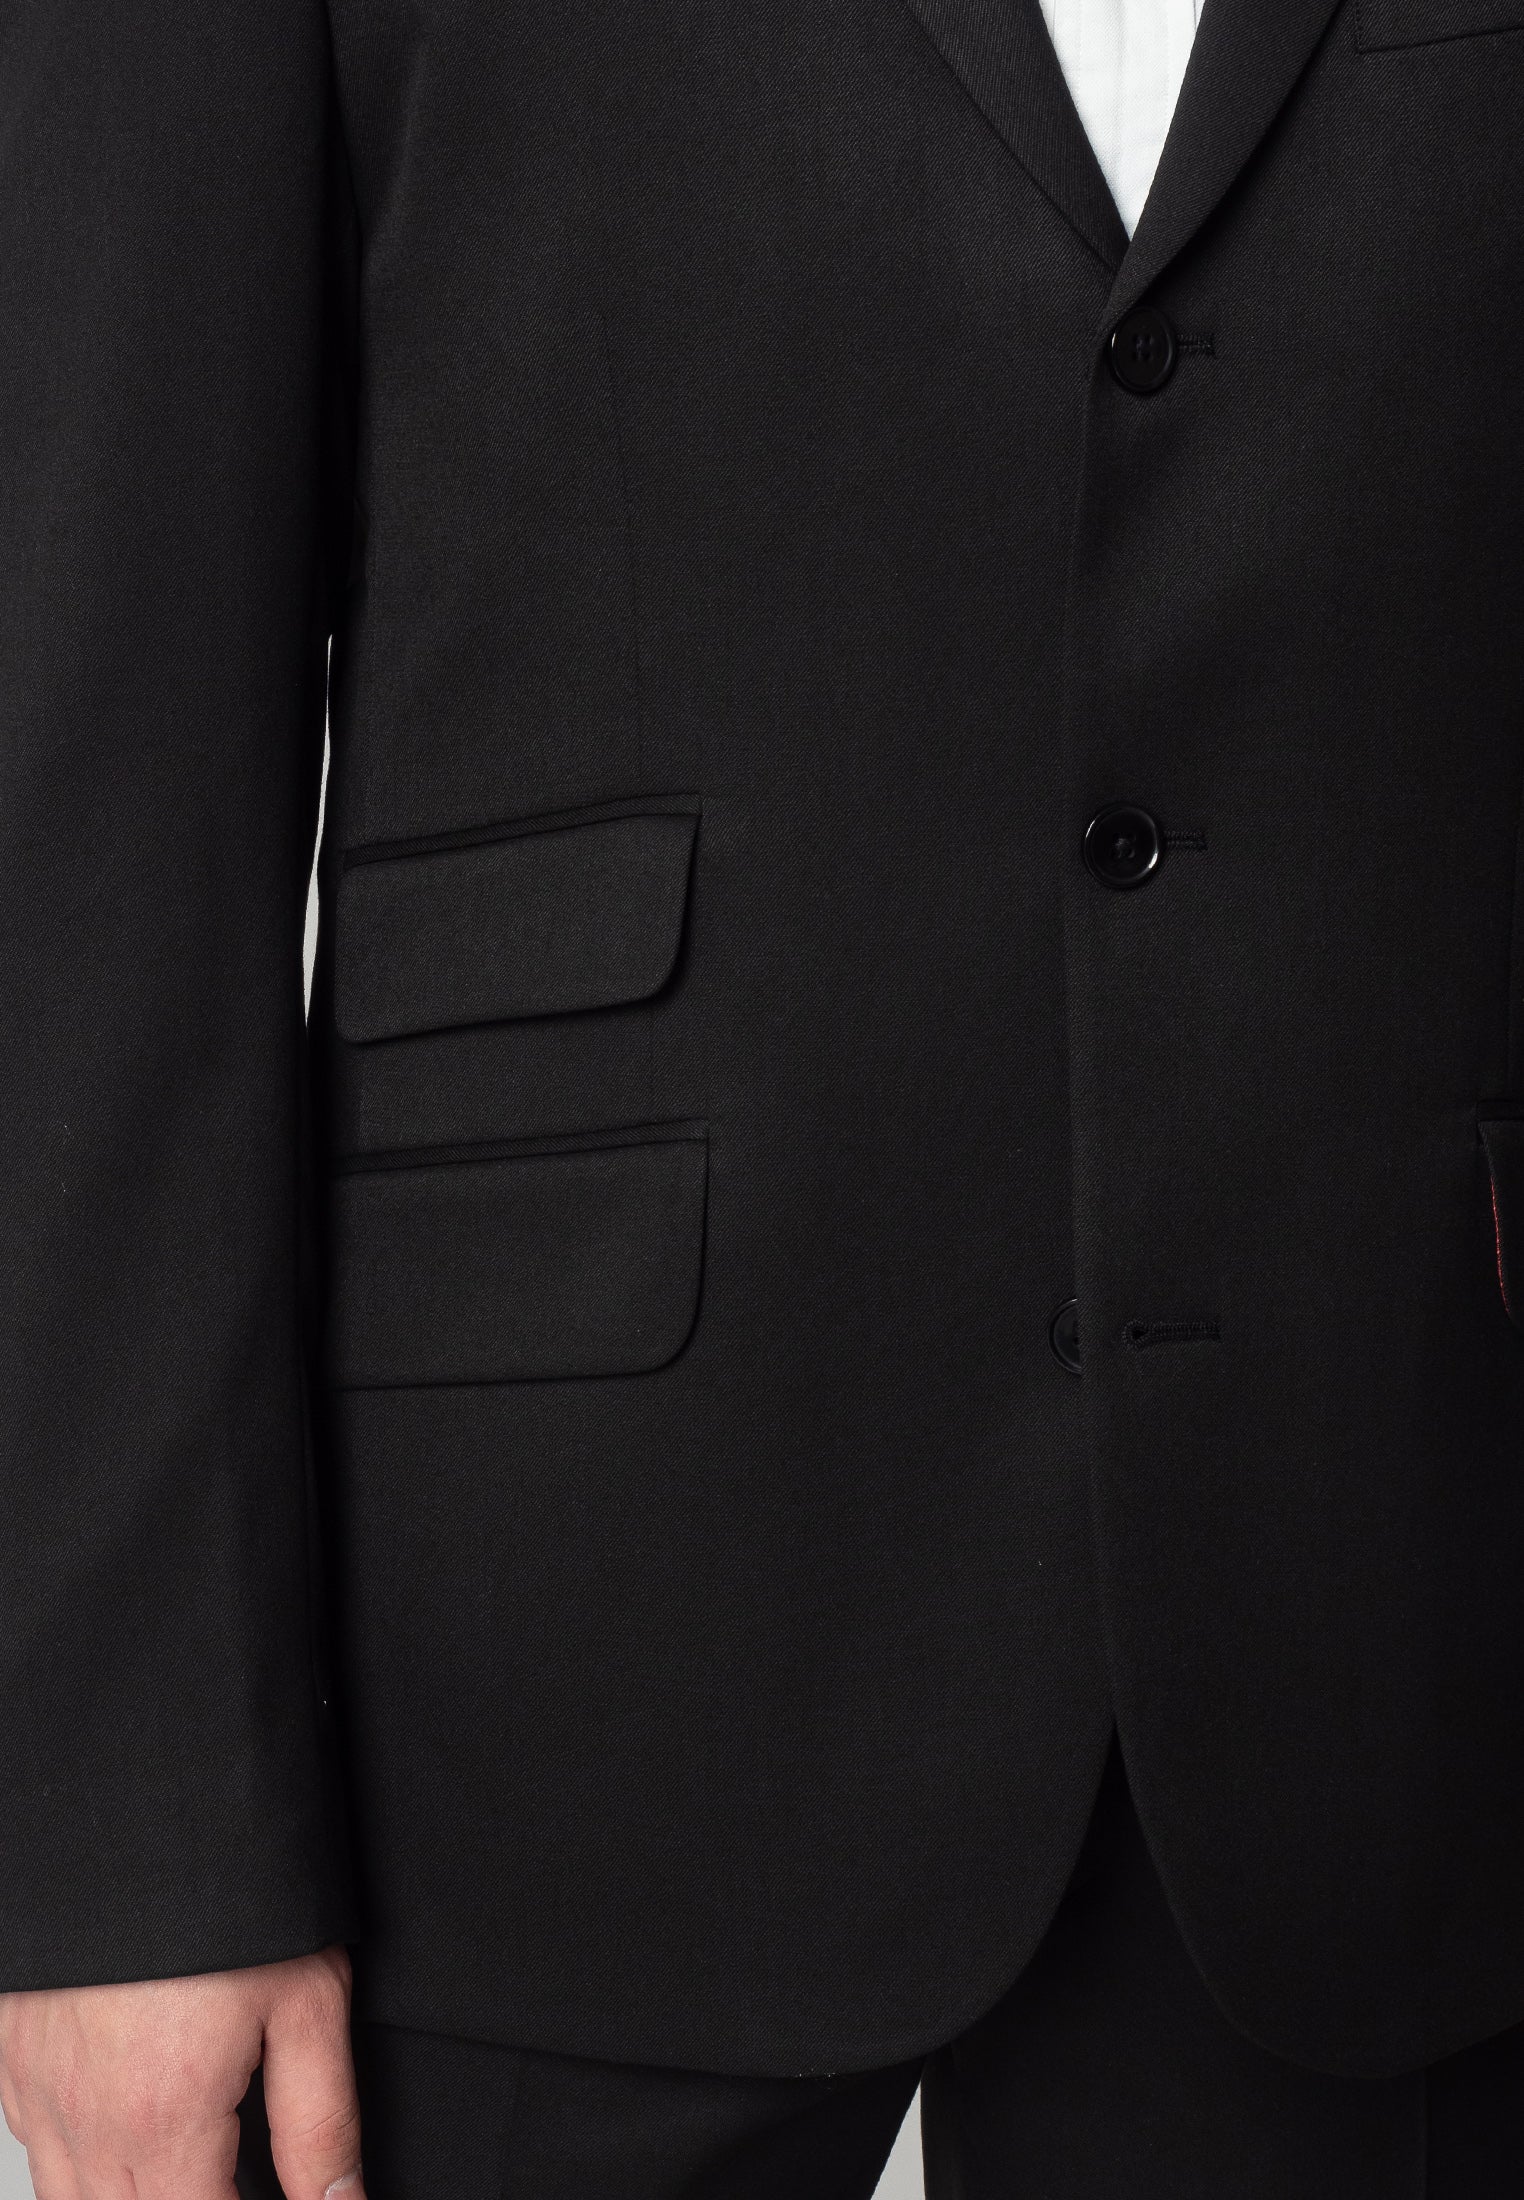 Plain Black Suit Jacket - Merc London